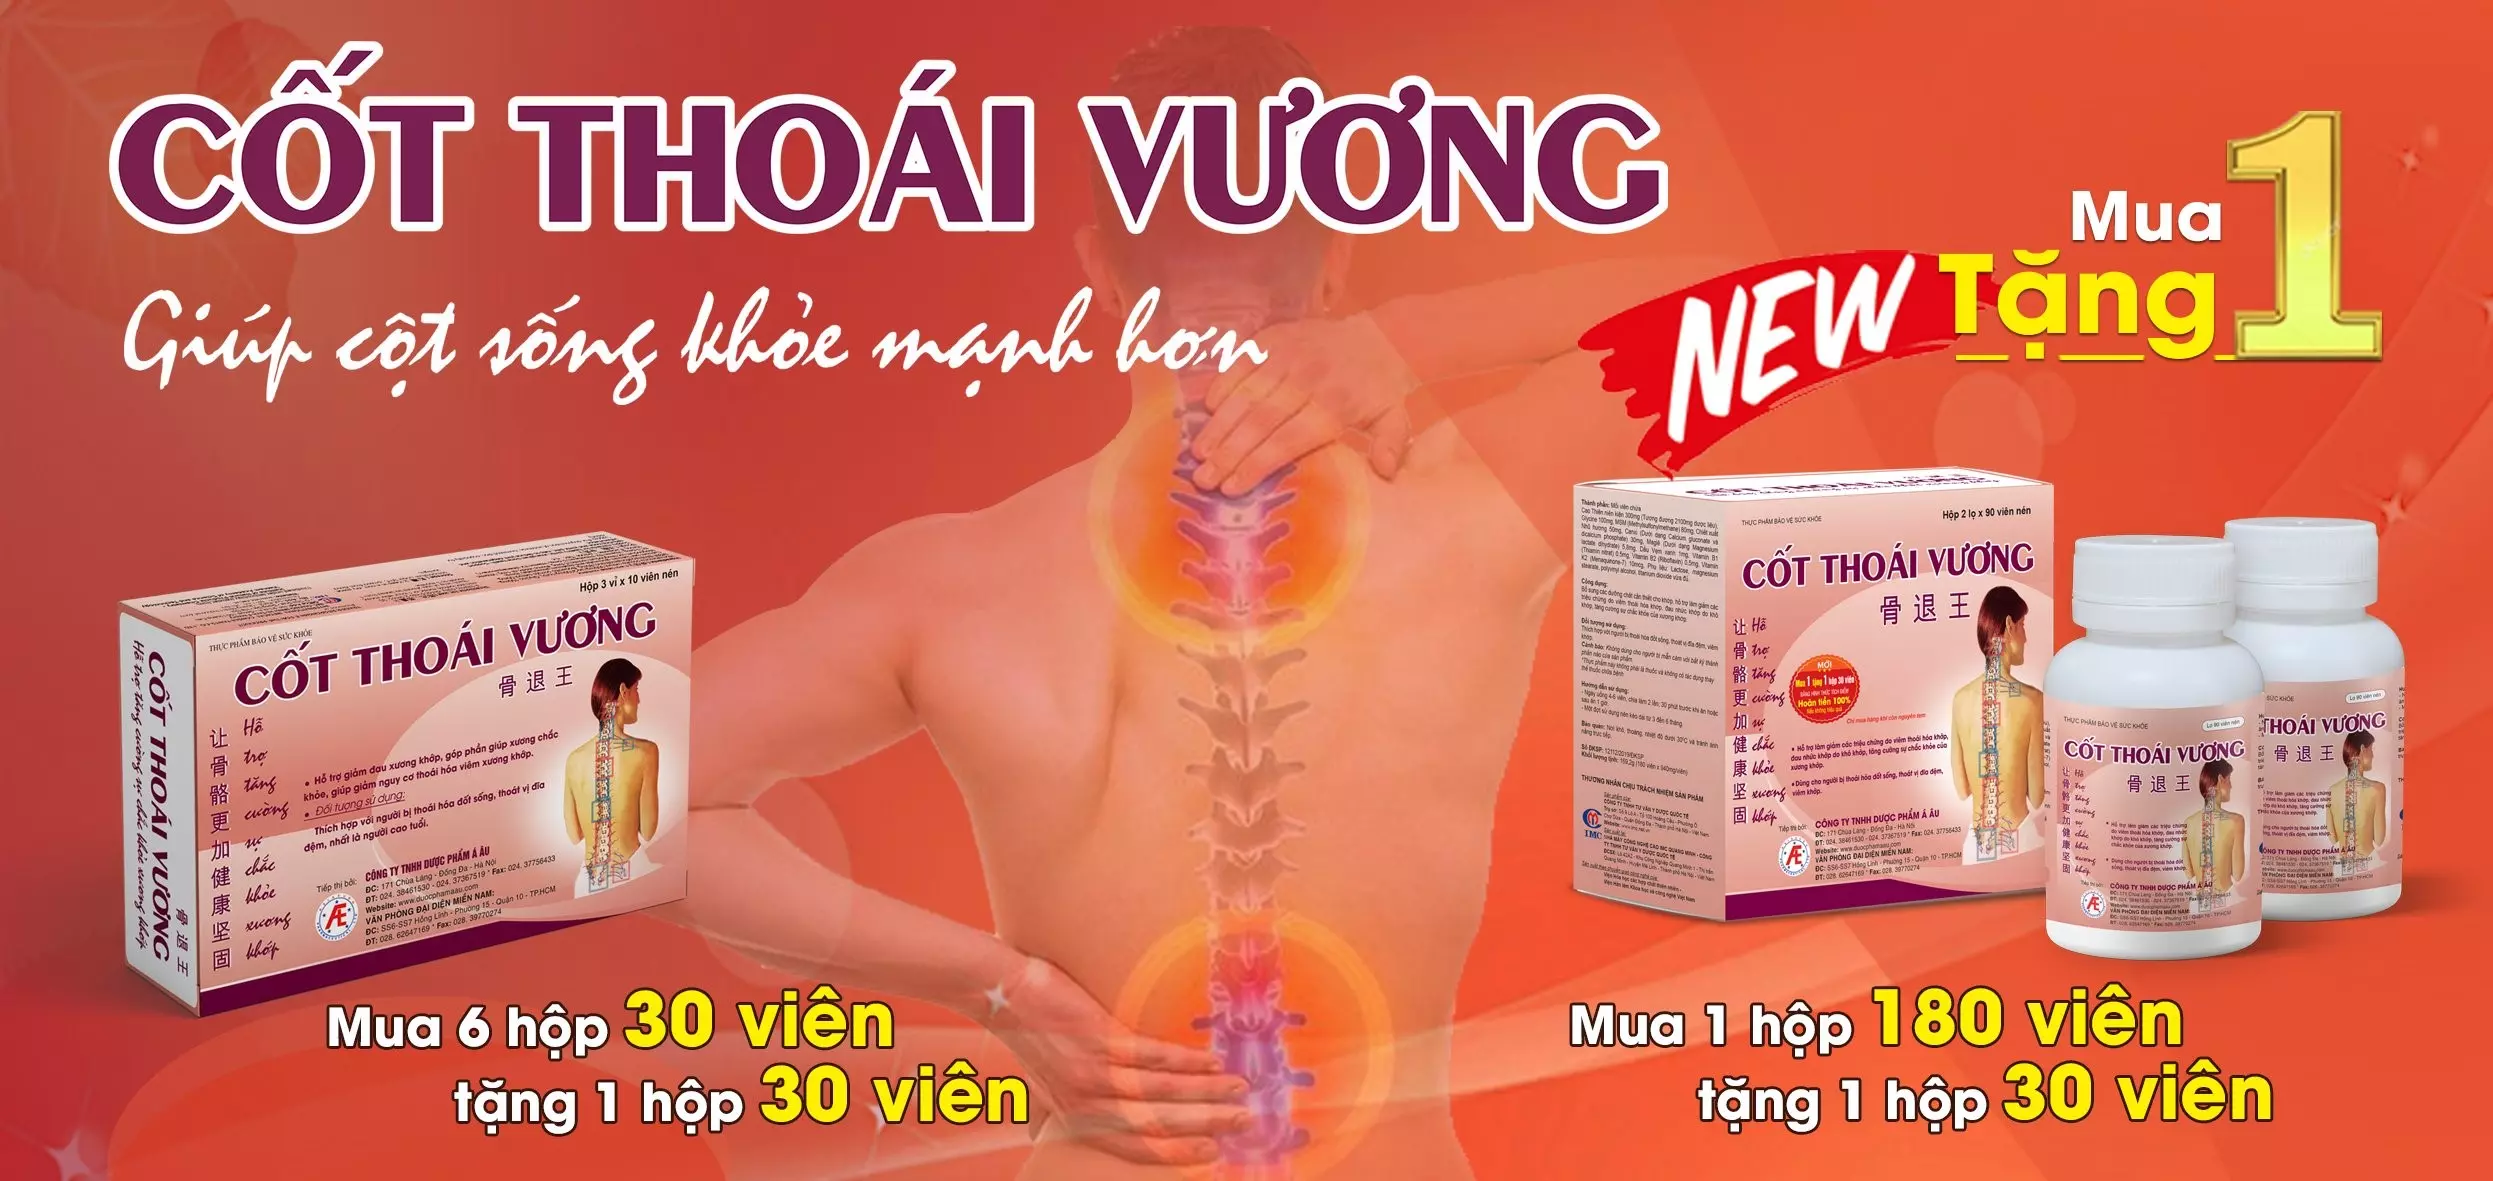 Cot-Thoai-Vuong-giup-cot-song-khoe-manh-hon.webp